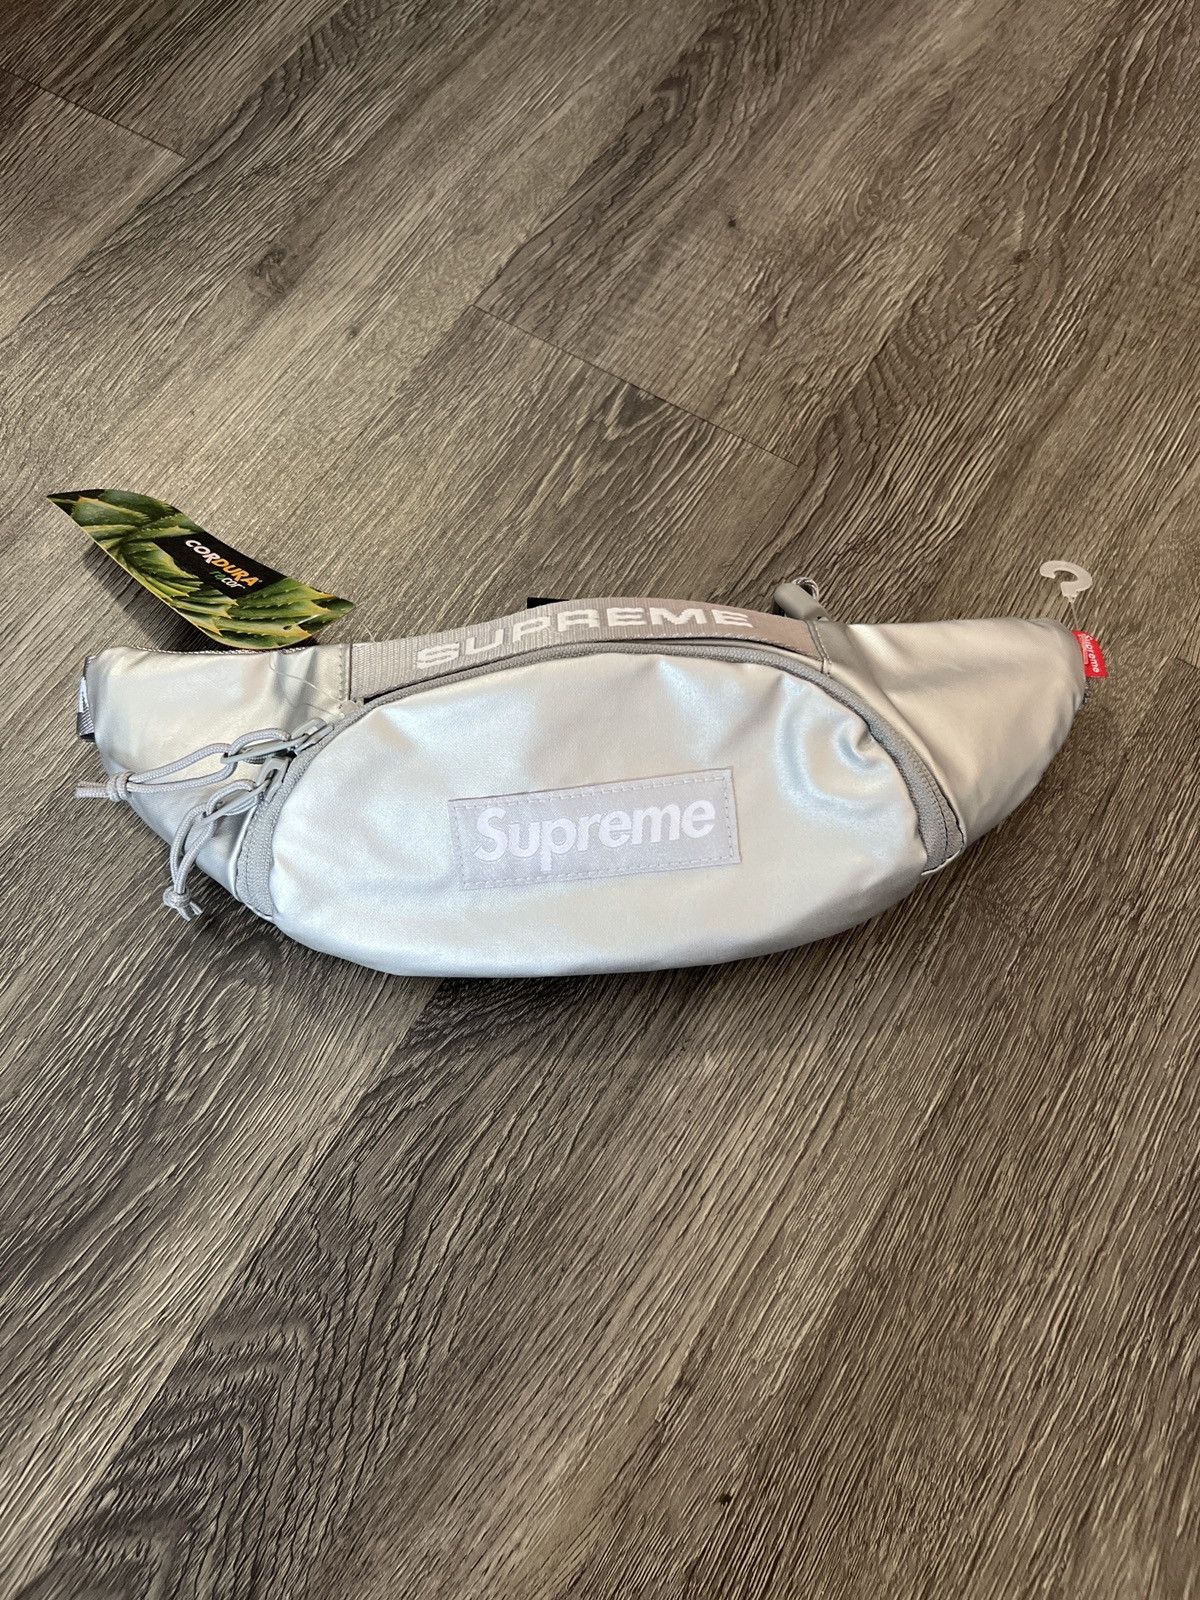 Supreme Small Waist Bag (FW22) Silver